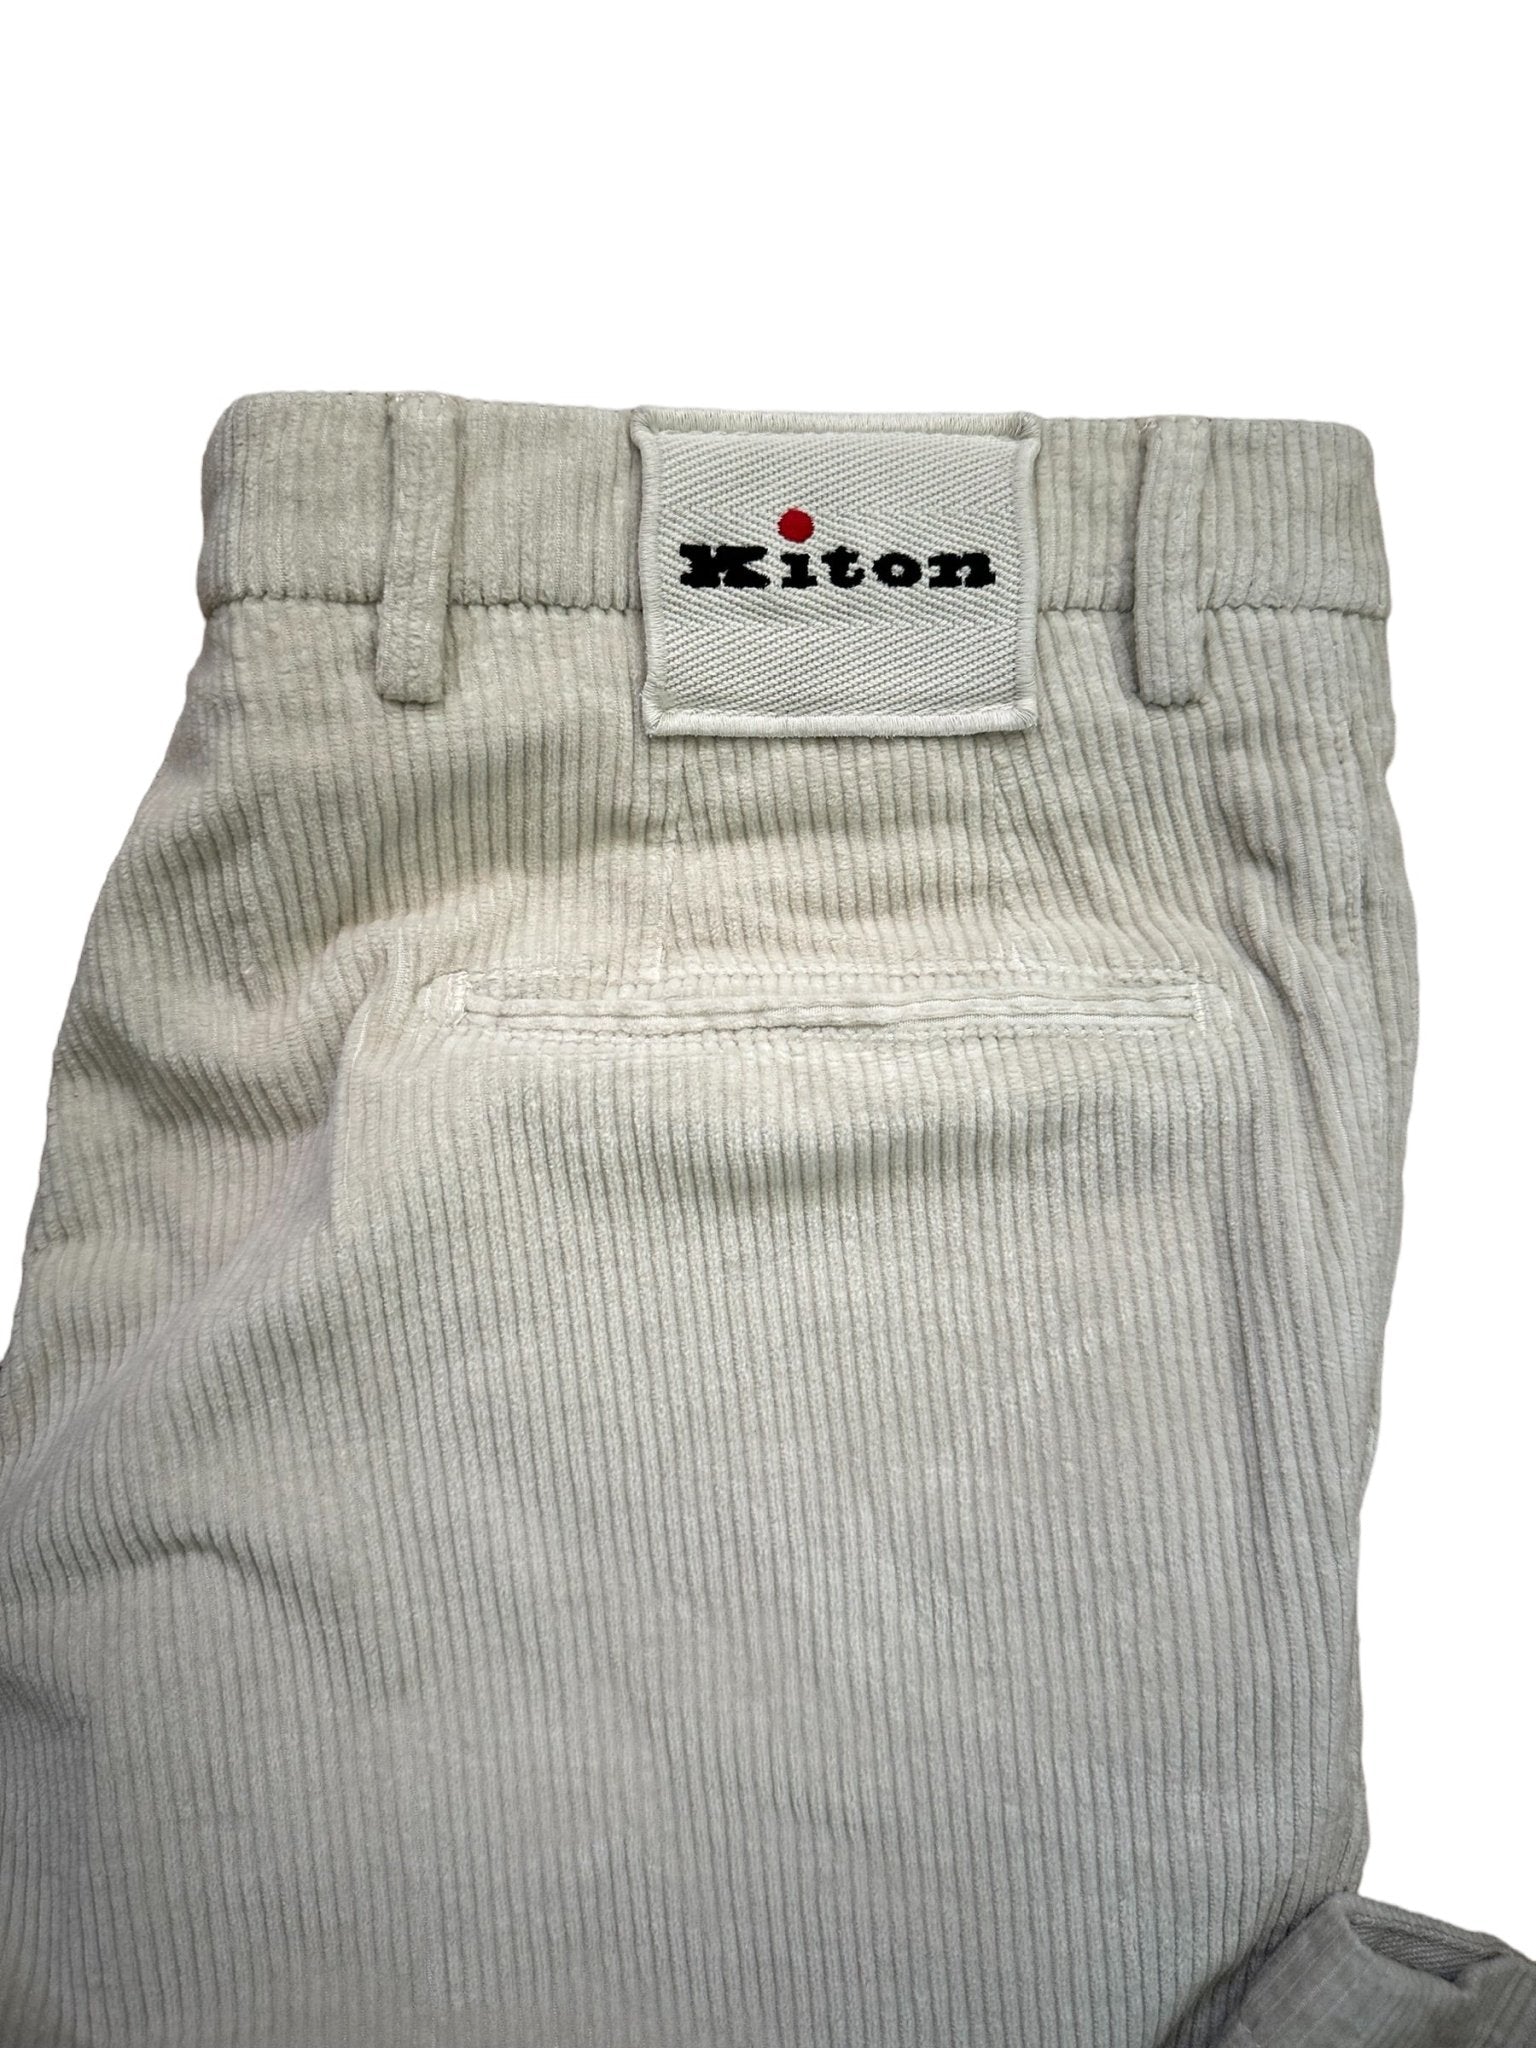 Kiton Hose Cord Chino - 24/7 Clothing